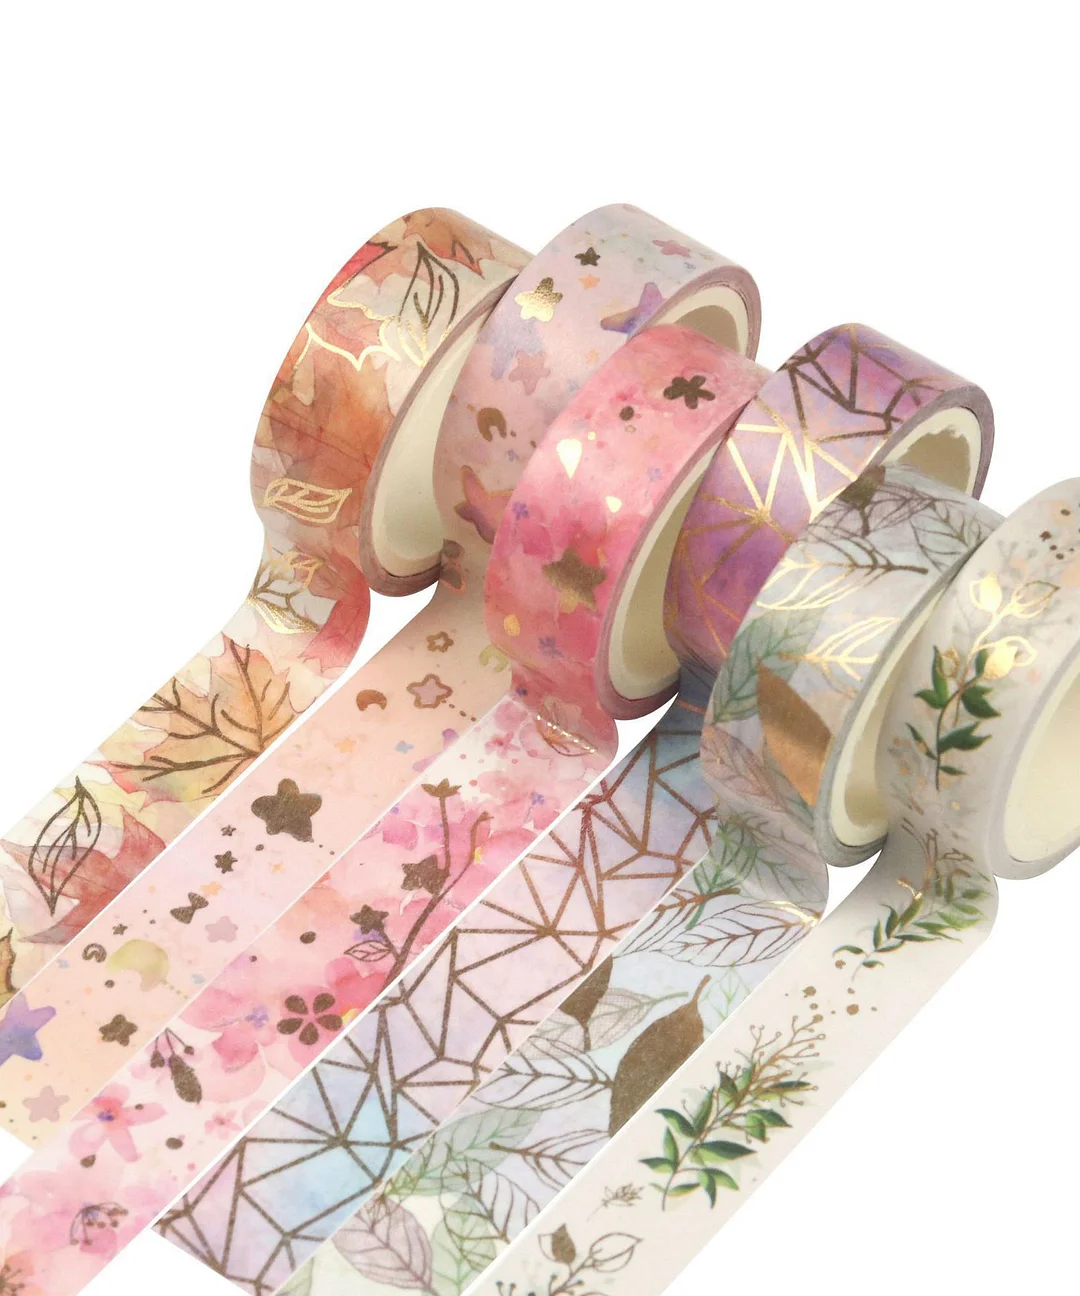 6 Rolls Spring Flower Gilded Washi Tape Set